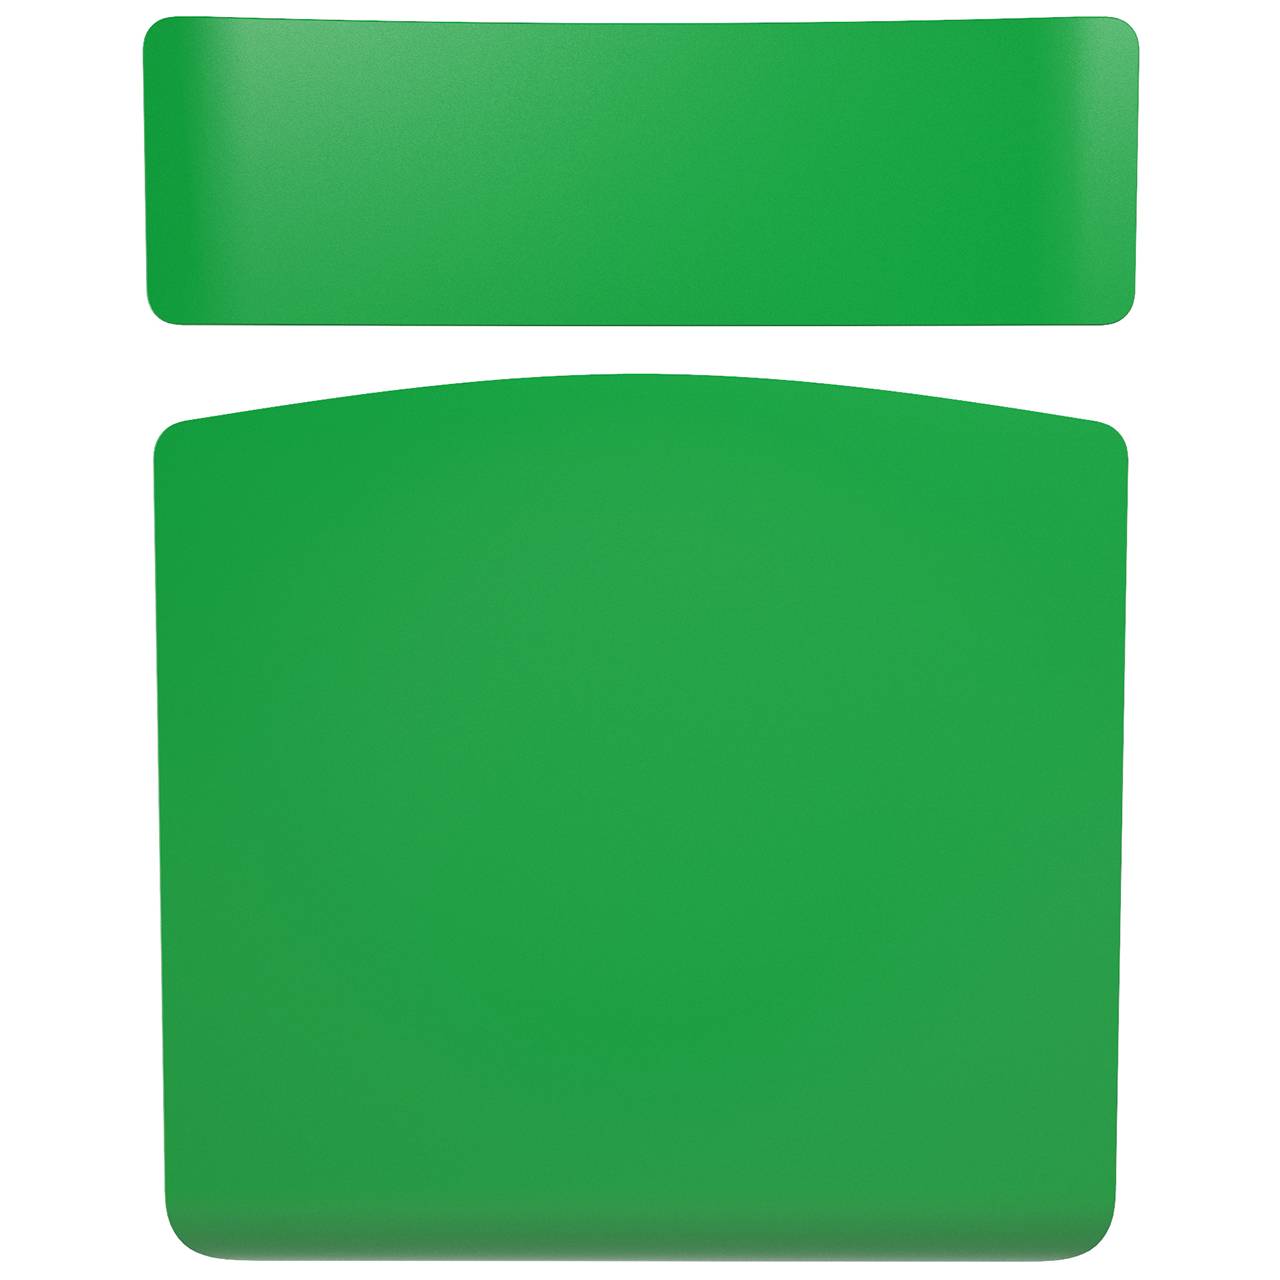 Стул ученический регулируемый гр. 3-5, 4-6 или 5-7 серый Зеленый 5-7 плоскоовальная